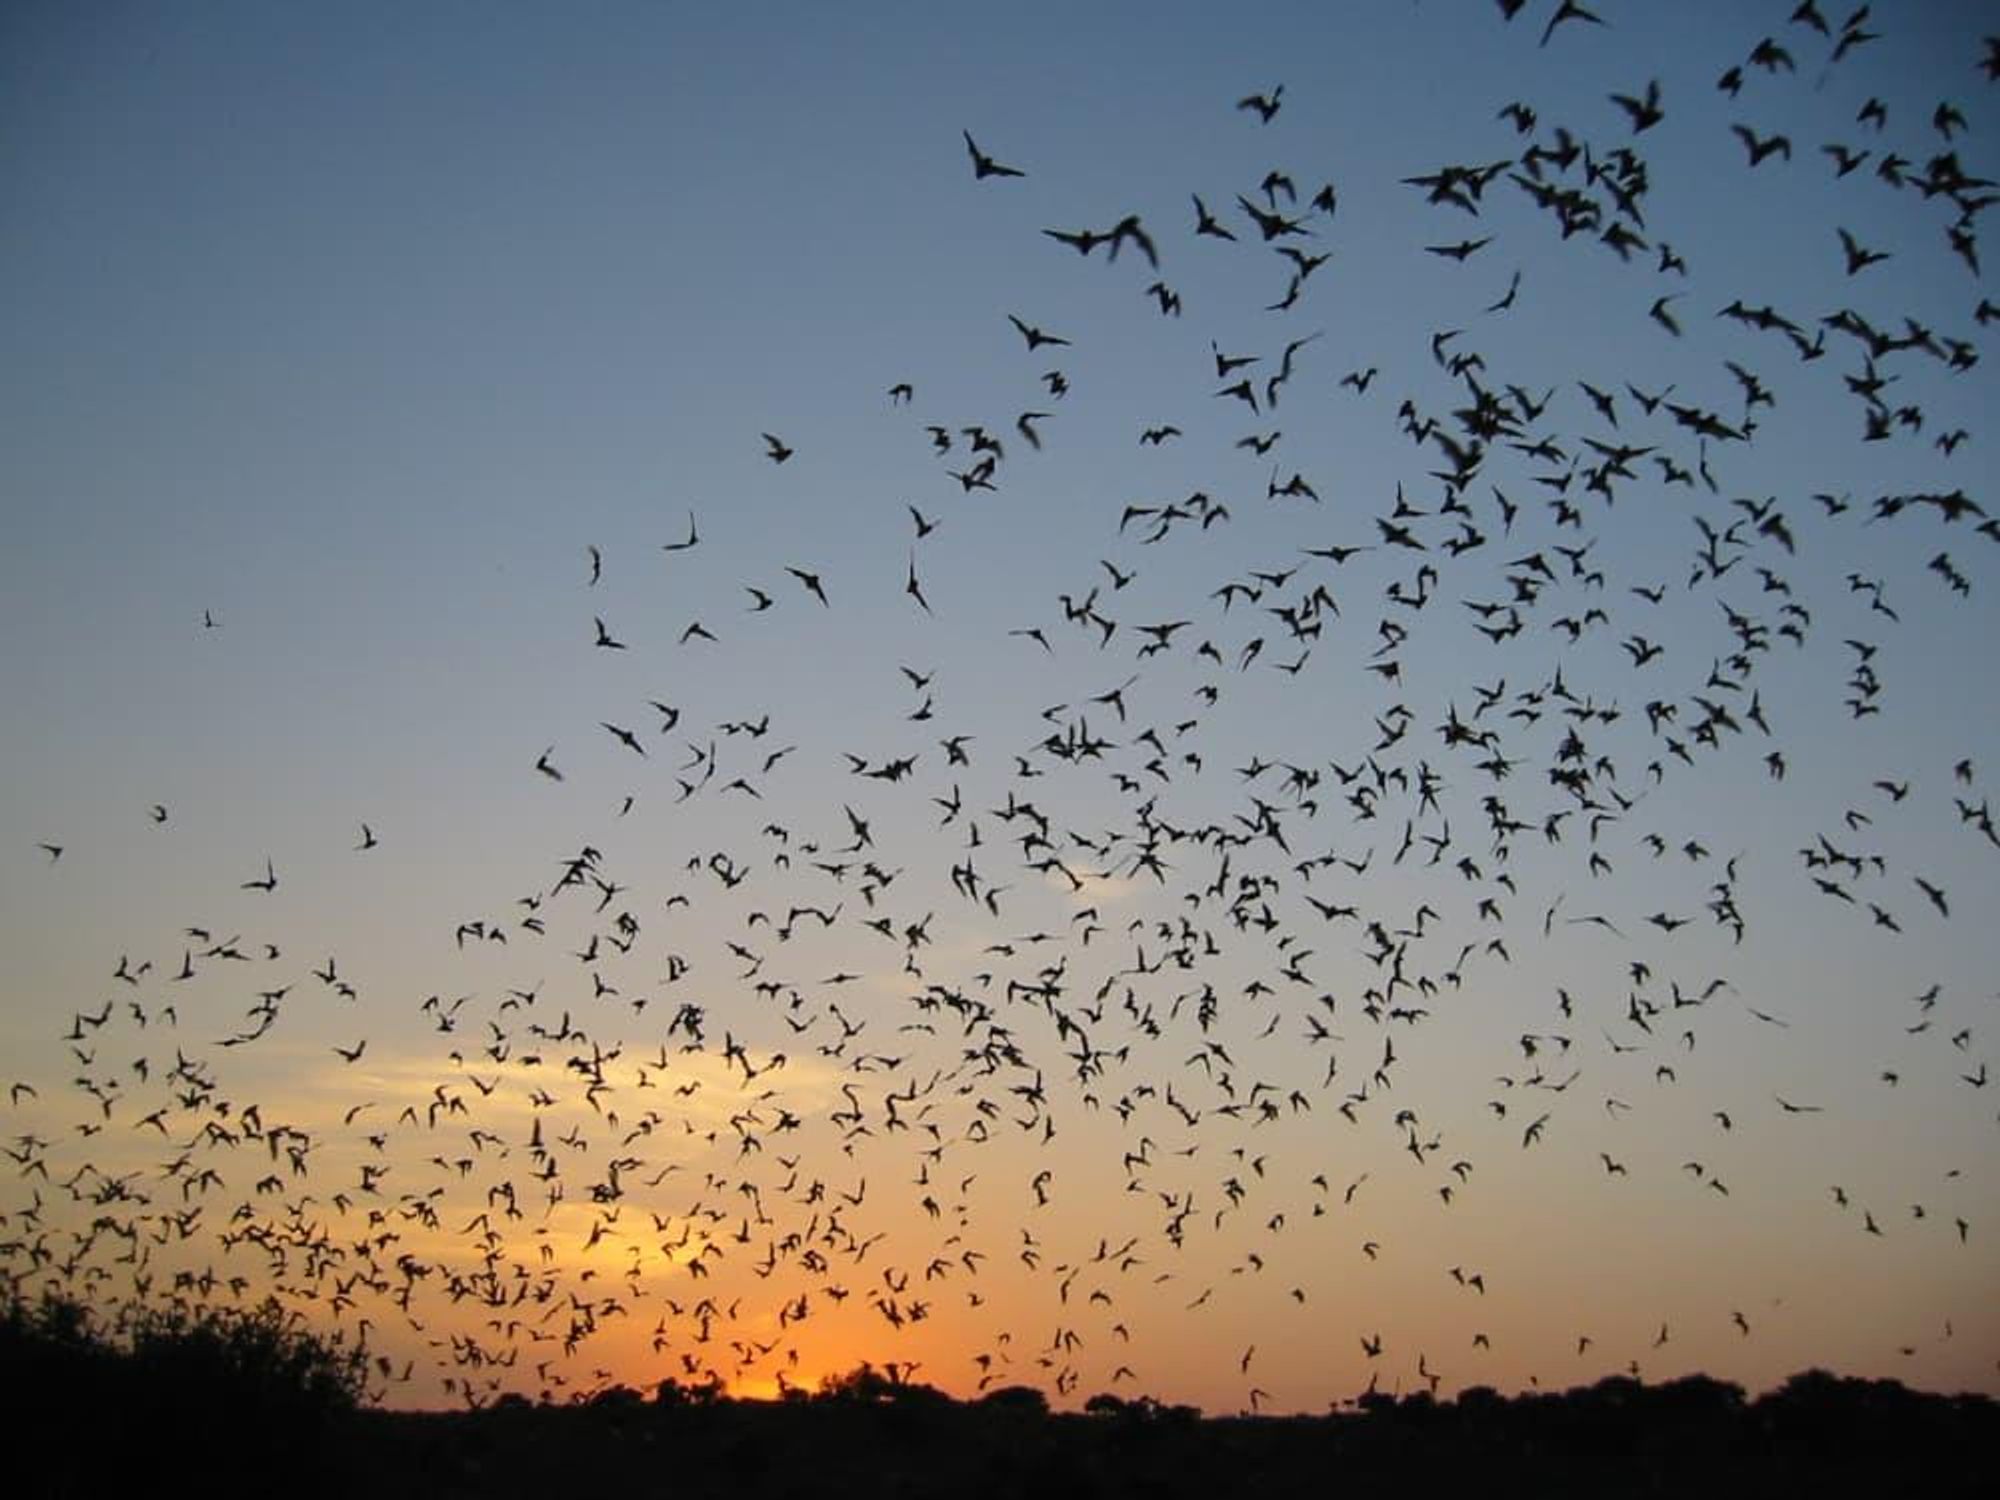 Bats on the Bayou